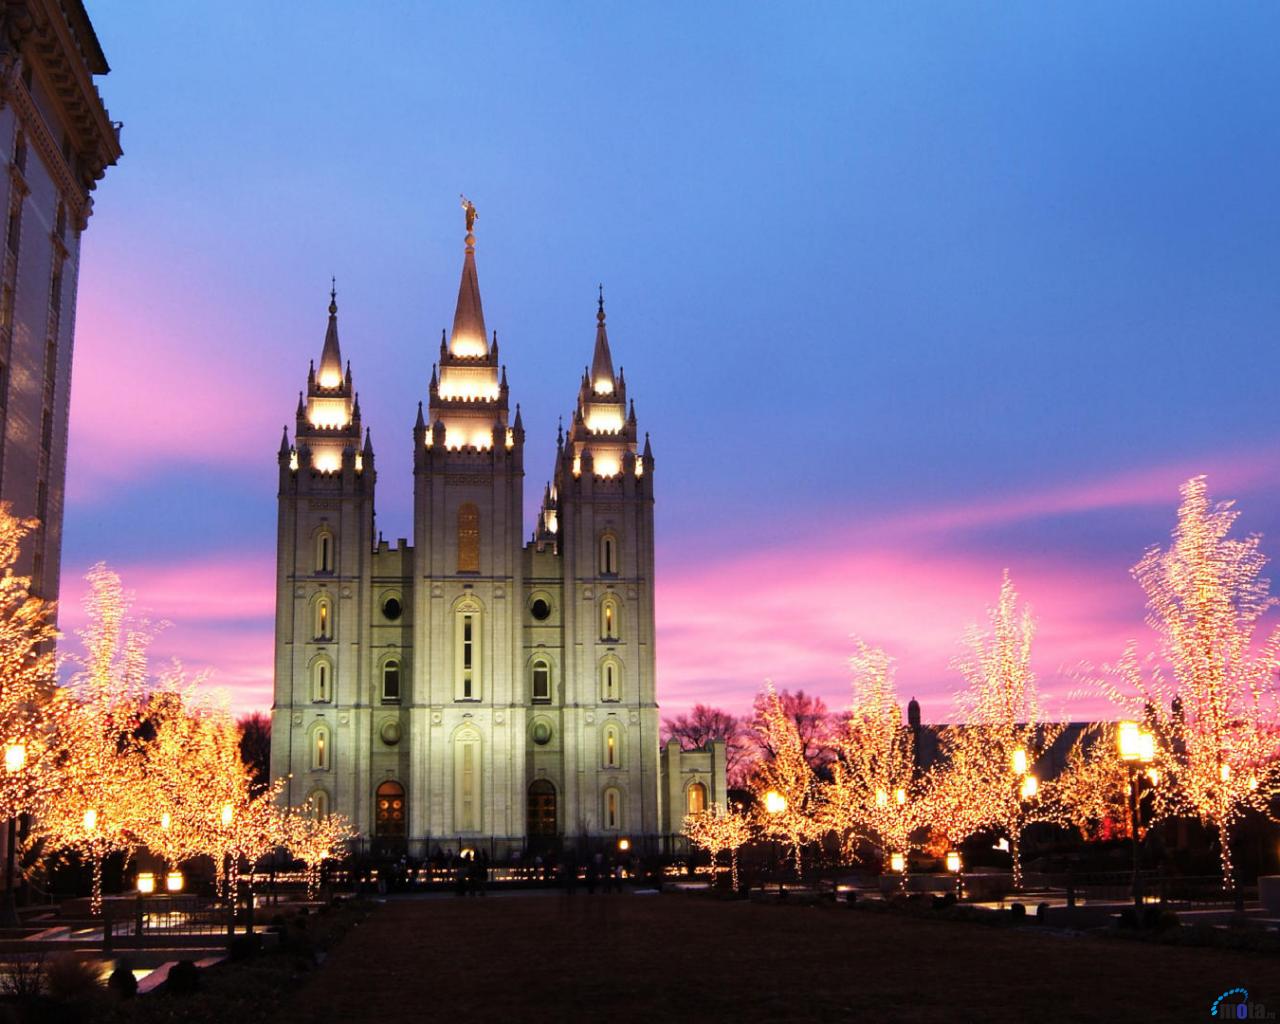 Download Wallpaper Mormon Temple at Christmas Salt Lake City Utah